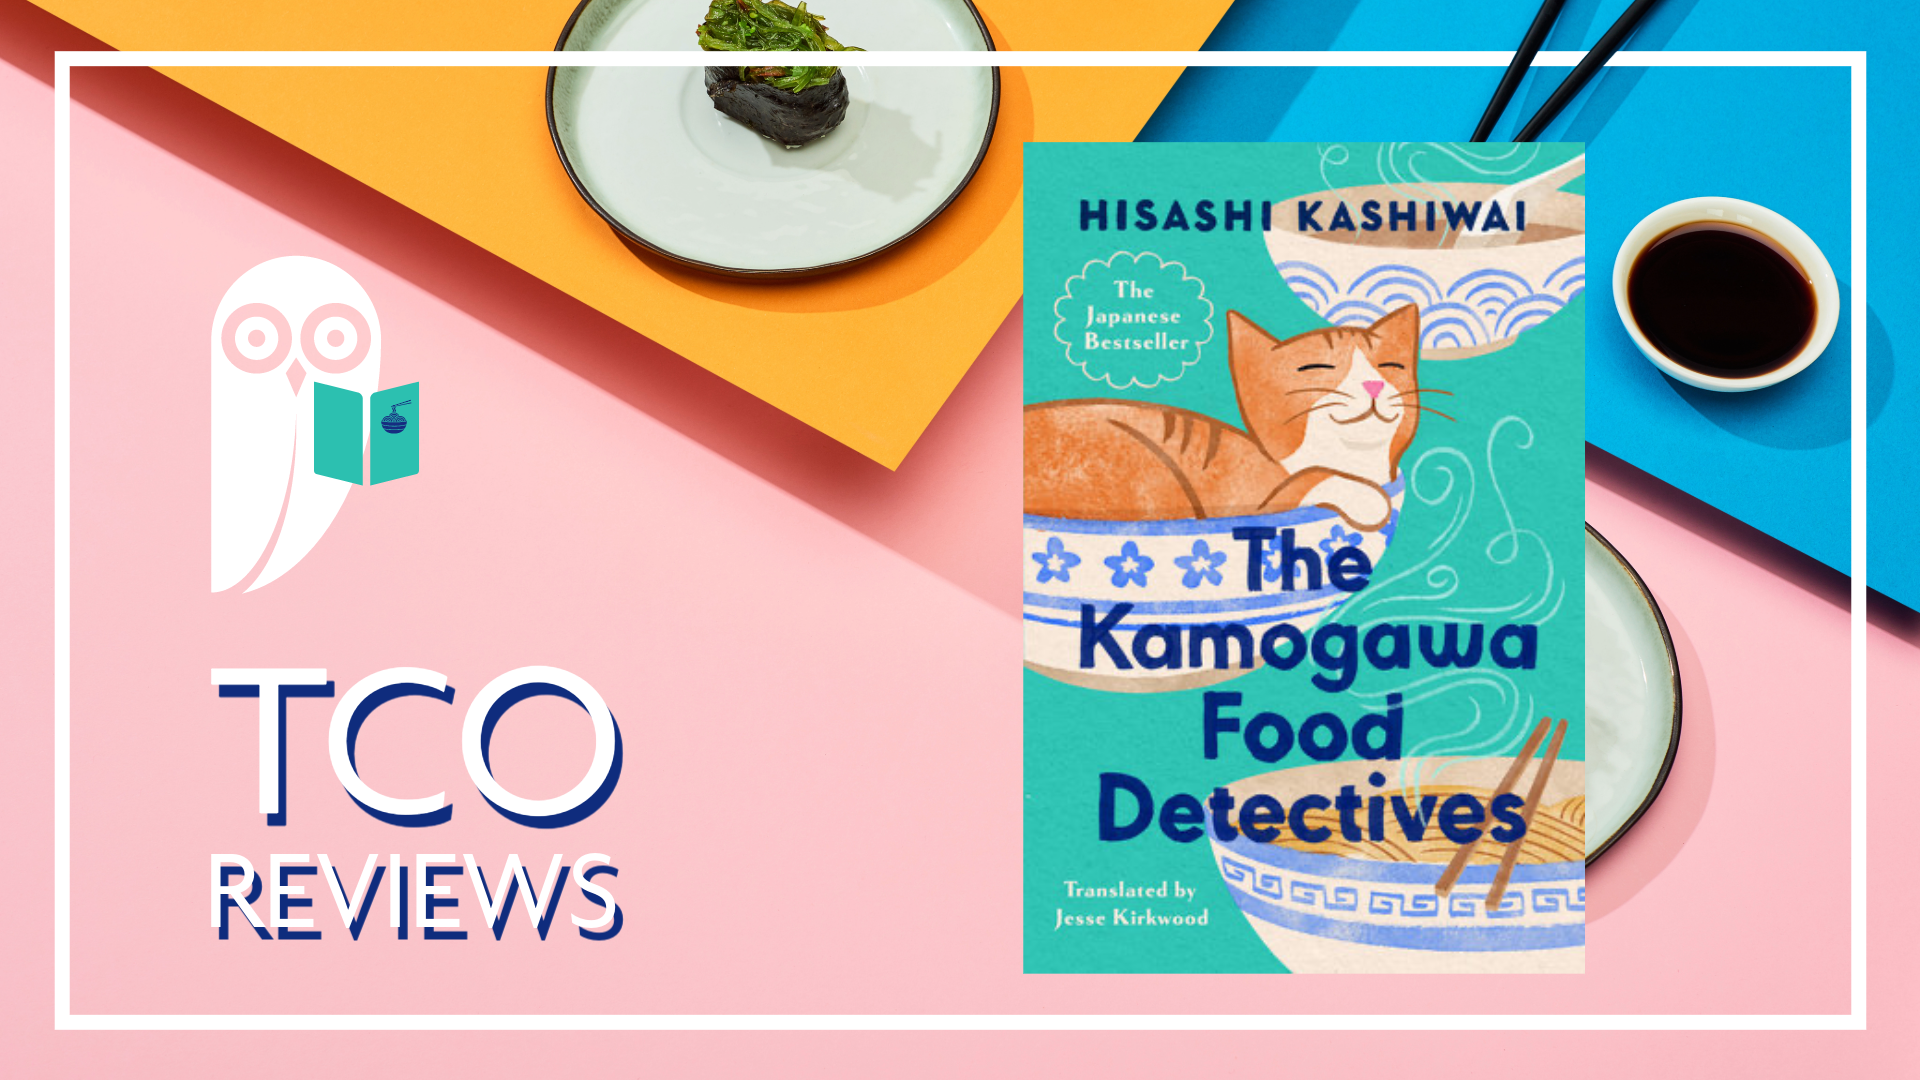 TCO Reviews: The Kamogawa Food Detectives by Hisashi Kashiwai